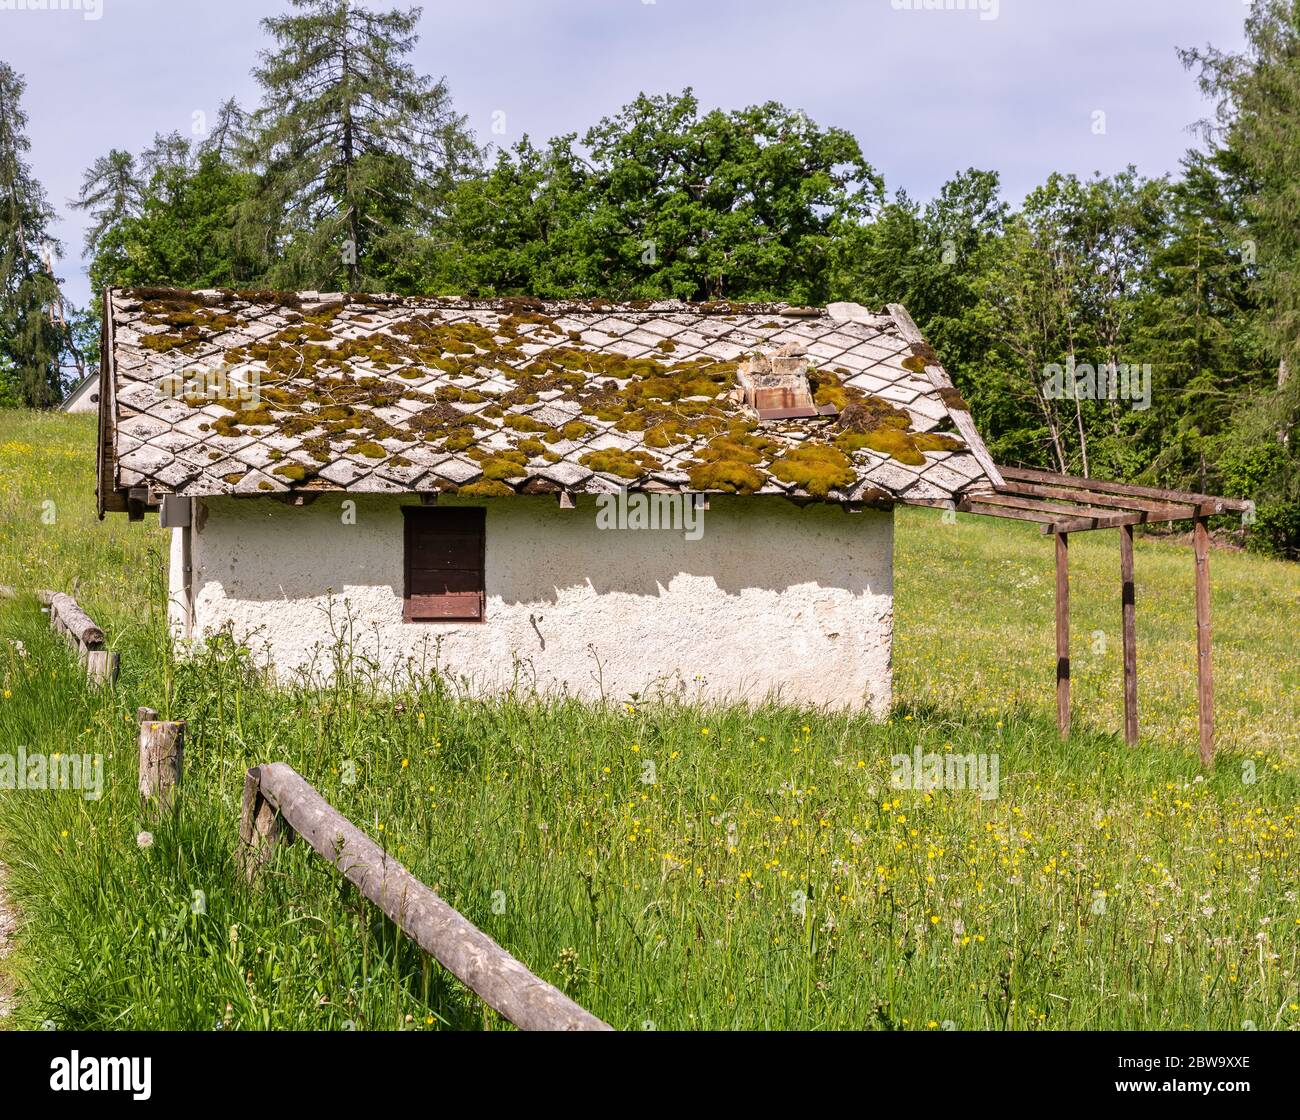 Piccola casa in legno in una verde valle montana del Trentino Alto Adige, Italia settentrionale, Europa. Foto Stock